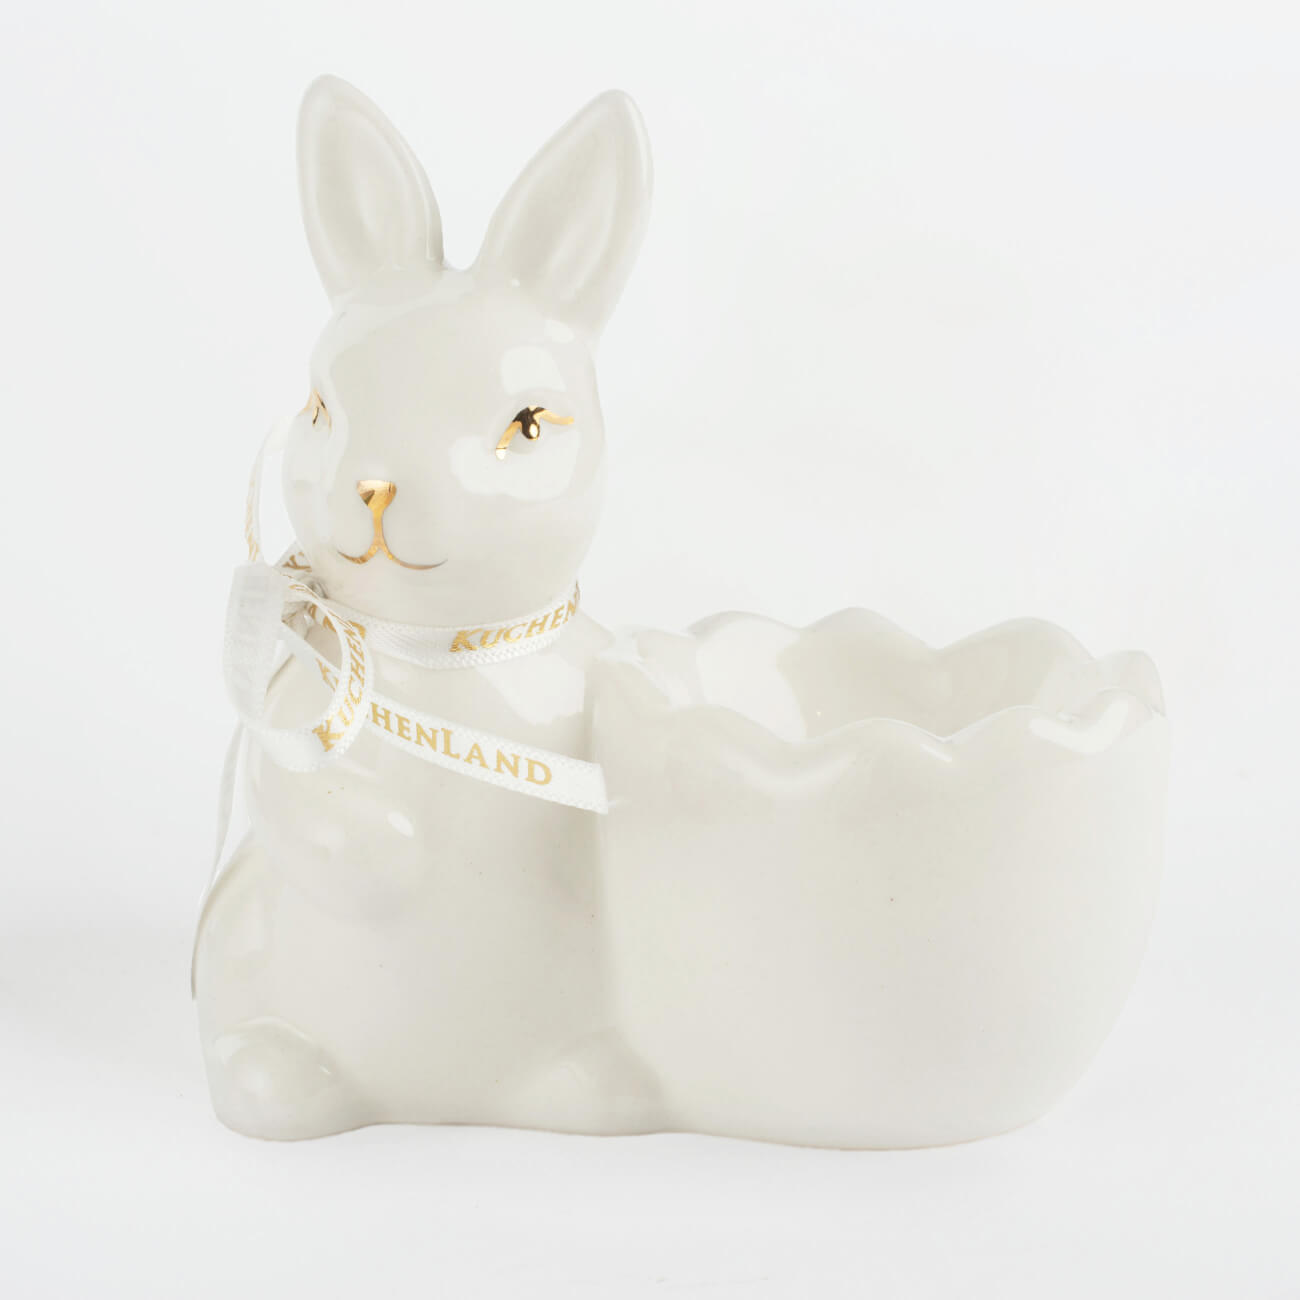 Подставка для яйца, 10 см, керамика, бело-золотистая, Кролик со скорлупкой, Easter gold